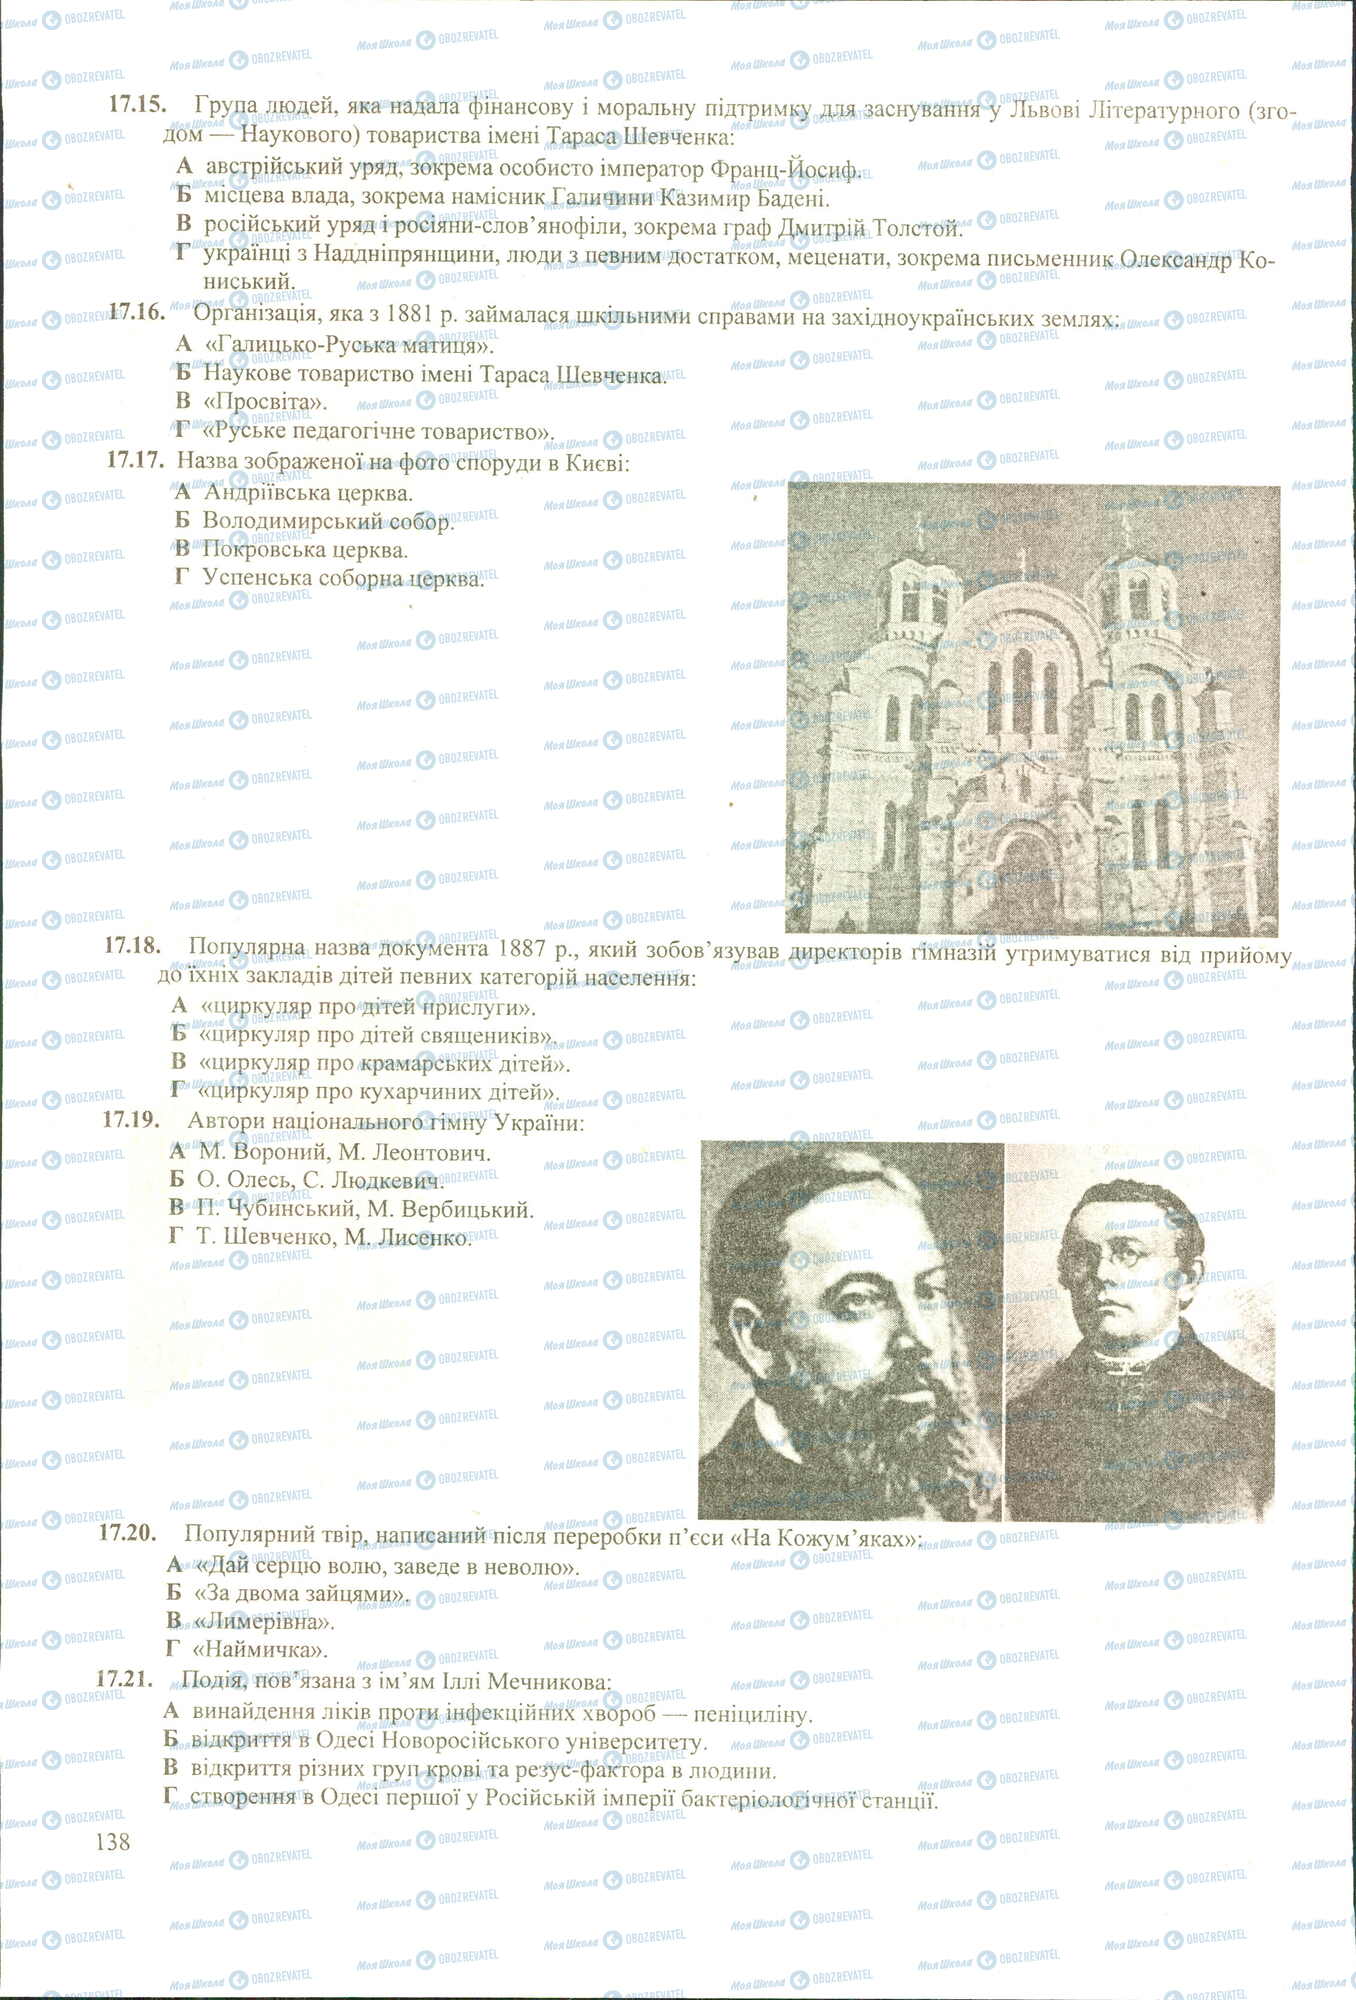 ЗНО История Украины 11 класс страница 15-21